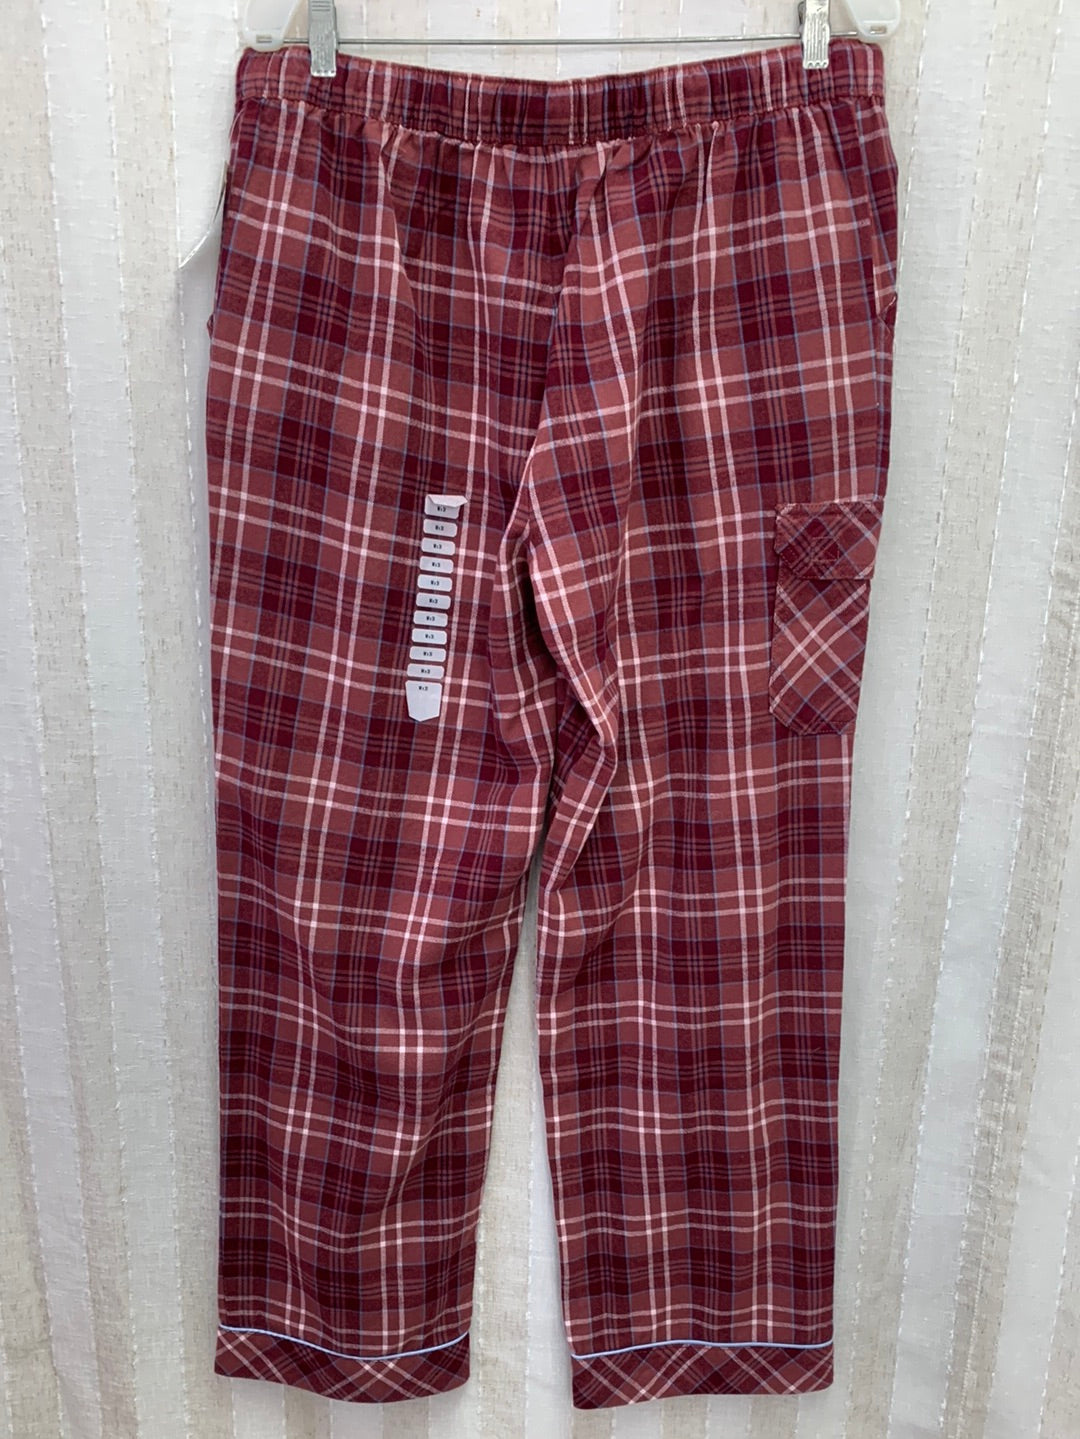 NWT - DULUTH maroon plaid Flannel Pajama Pants - Medium